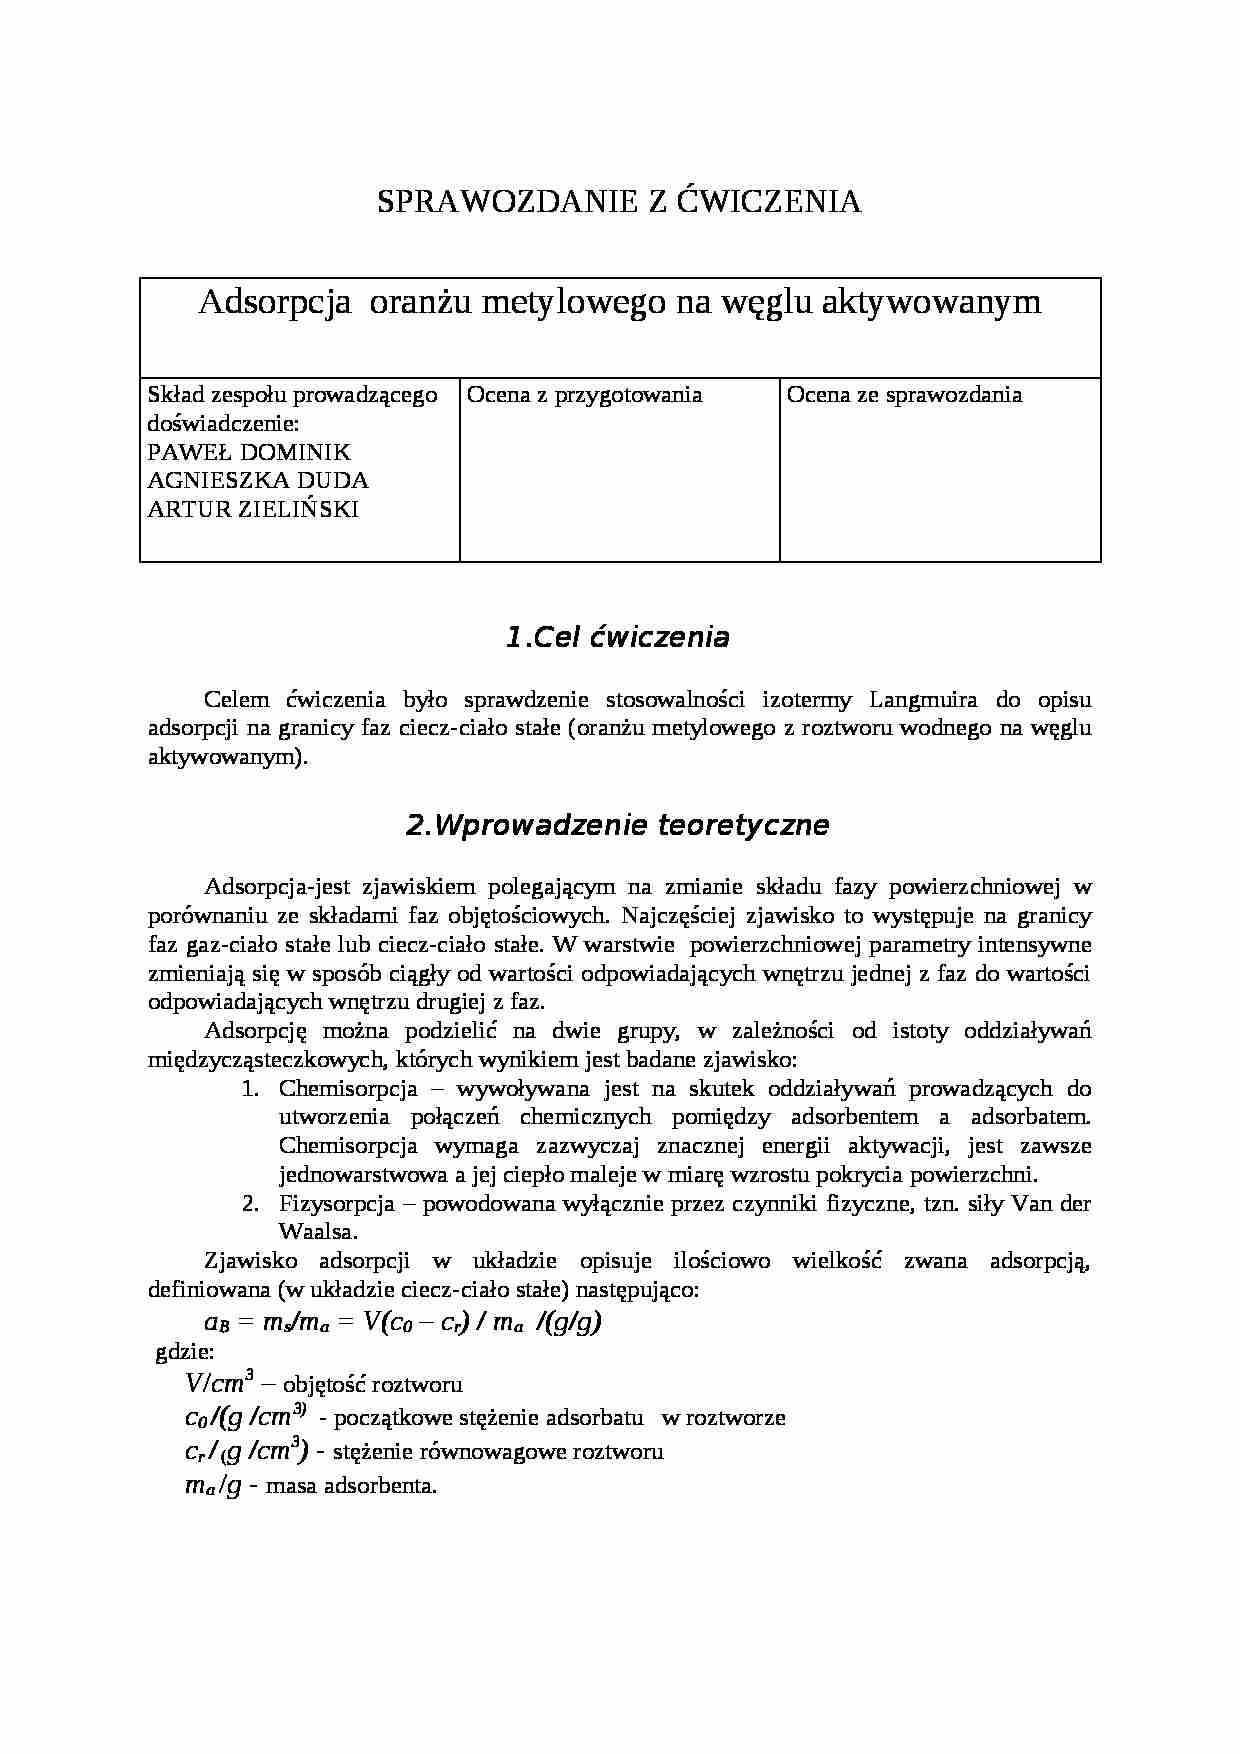 Adsorpcja oranżu metylowego na węglu aktywowanym - sprawozdanie - Szlif laboratoryjny - strona 1